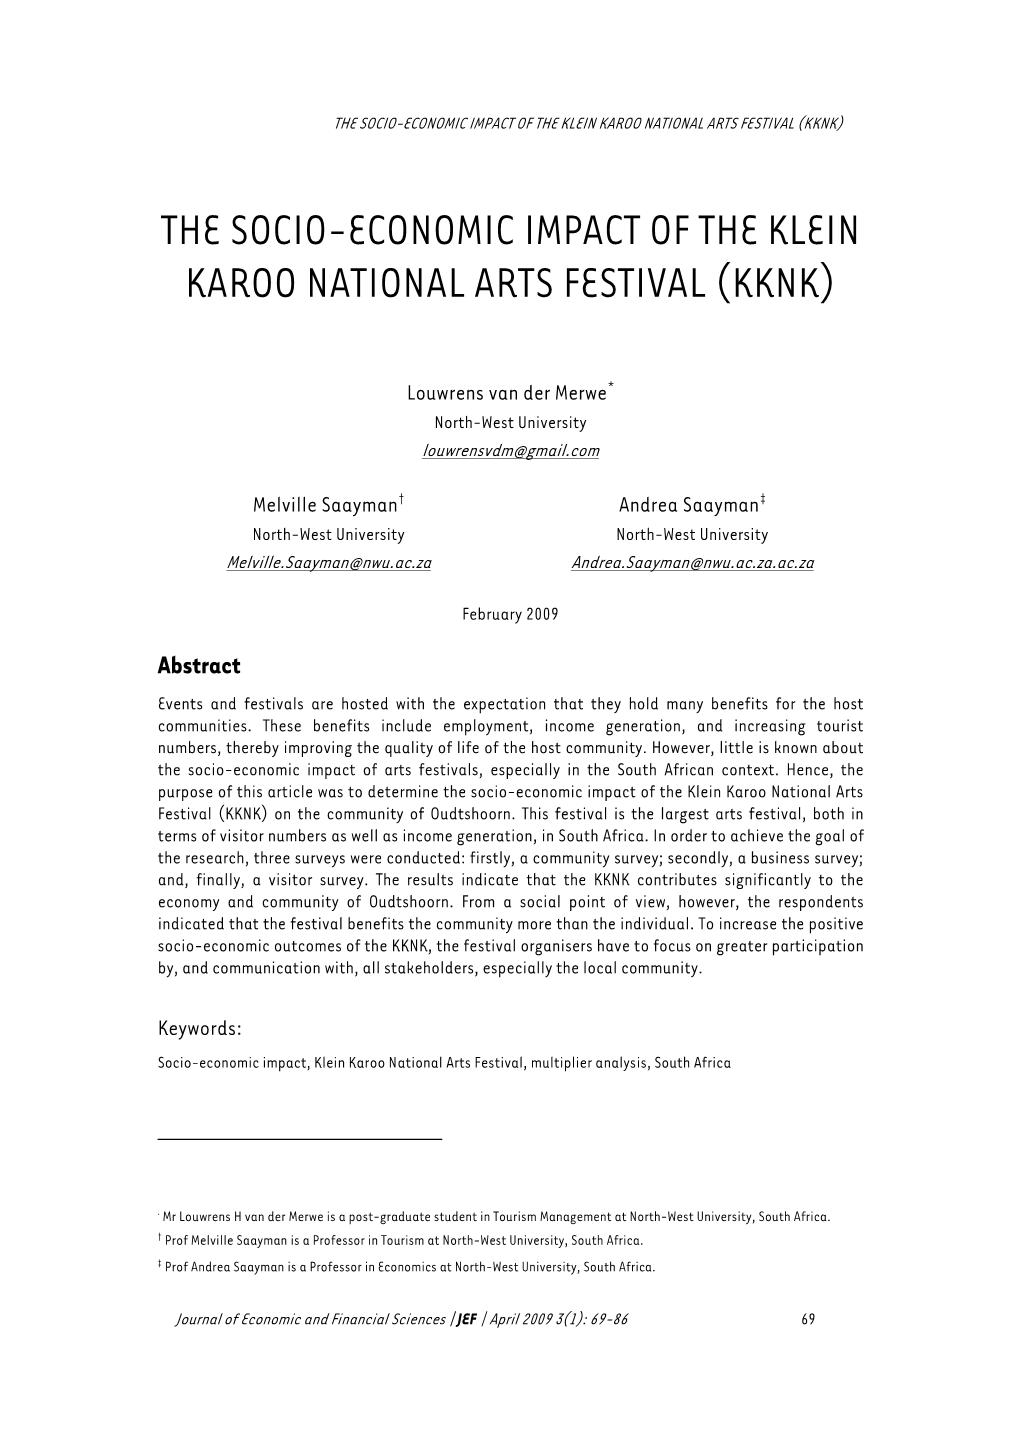 The Socio-Economic Impact of the Klein Karoo National Arts Festival (Kknk)